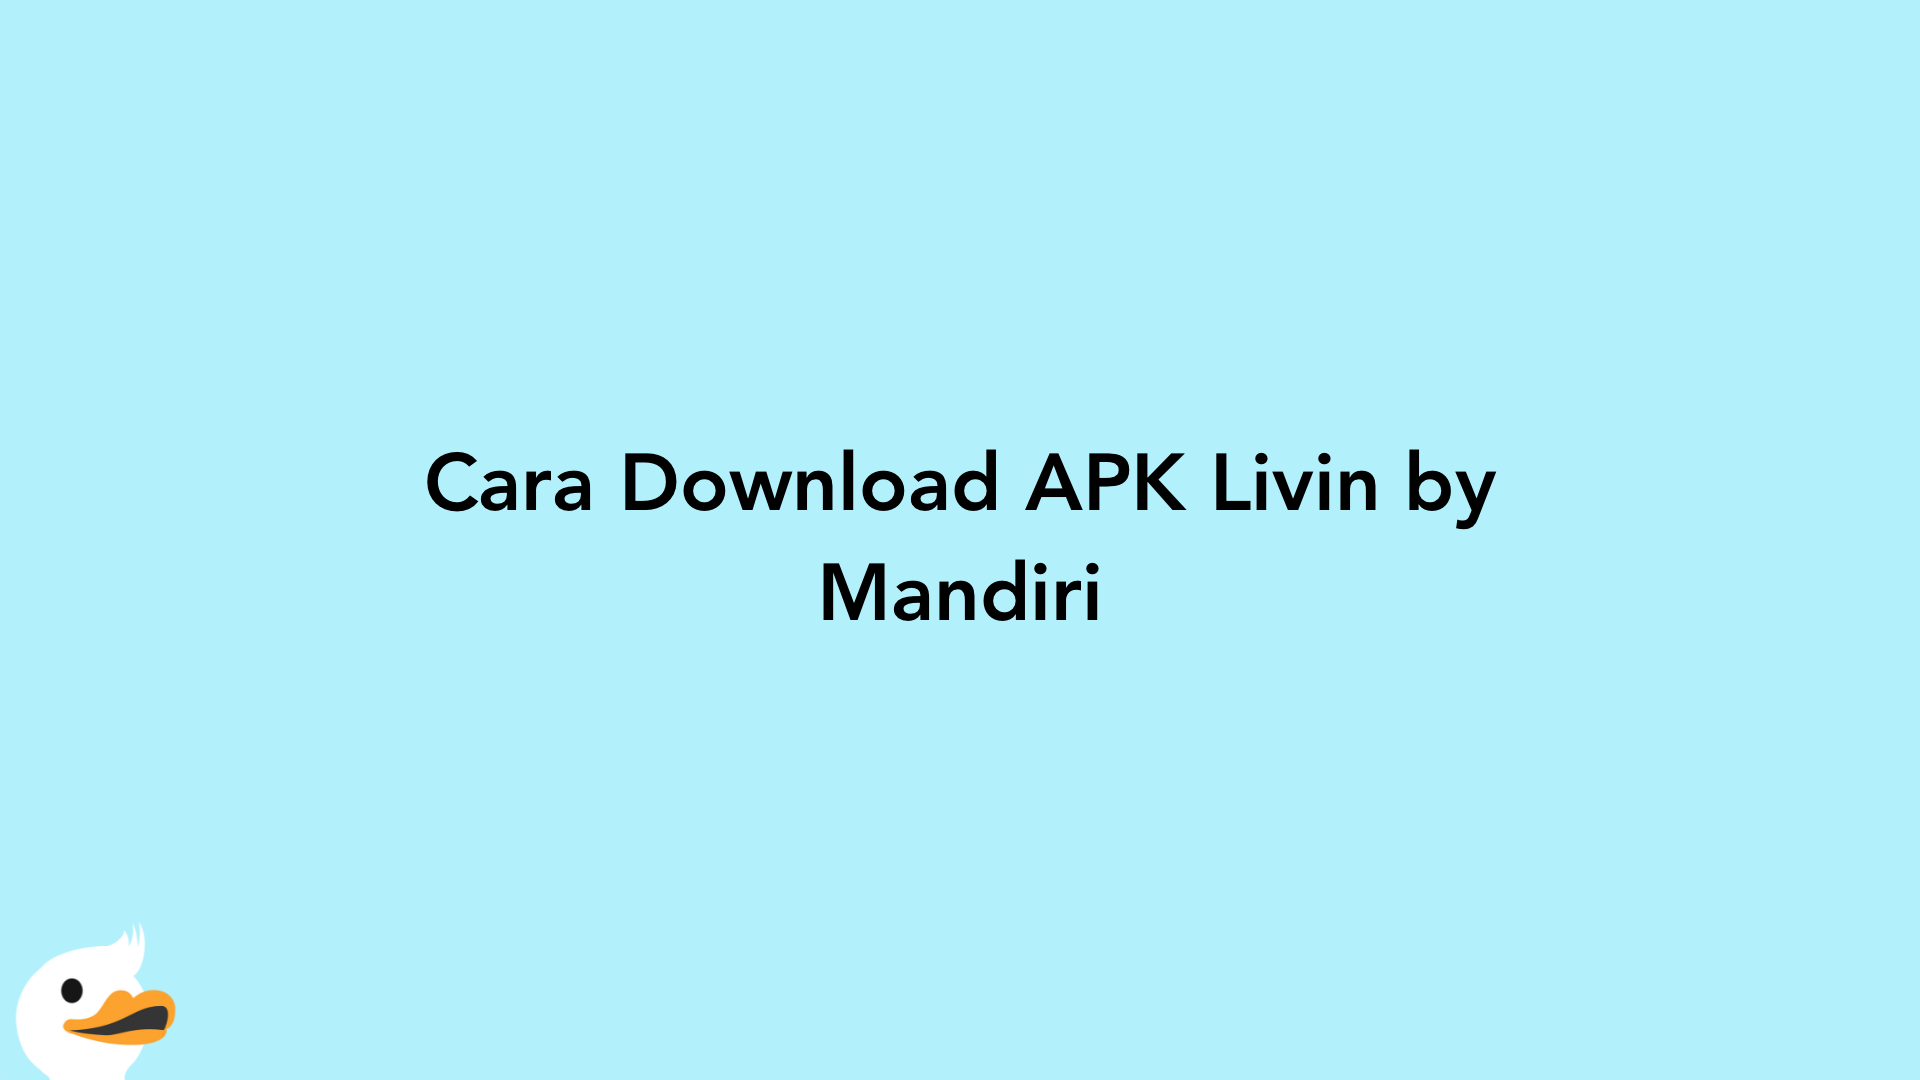 Cara Download APK Livin by Mandiri